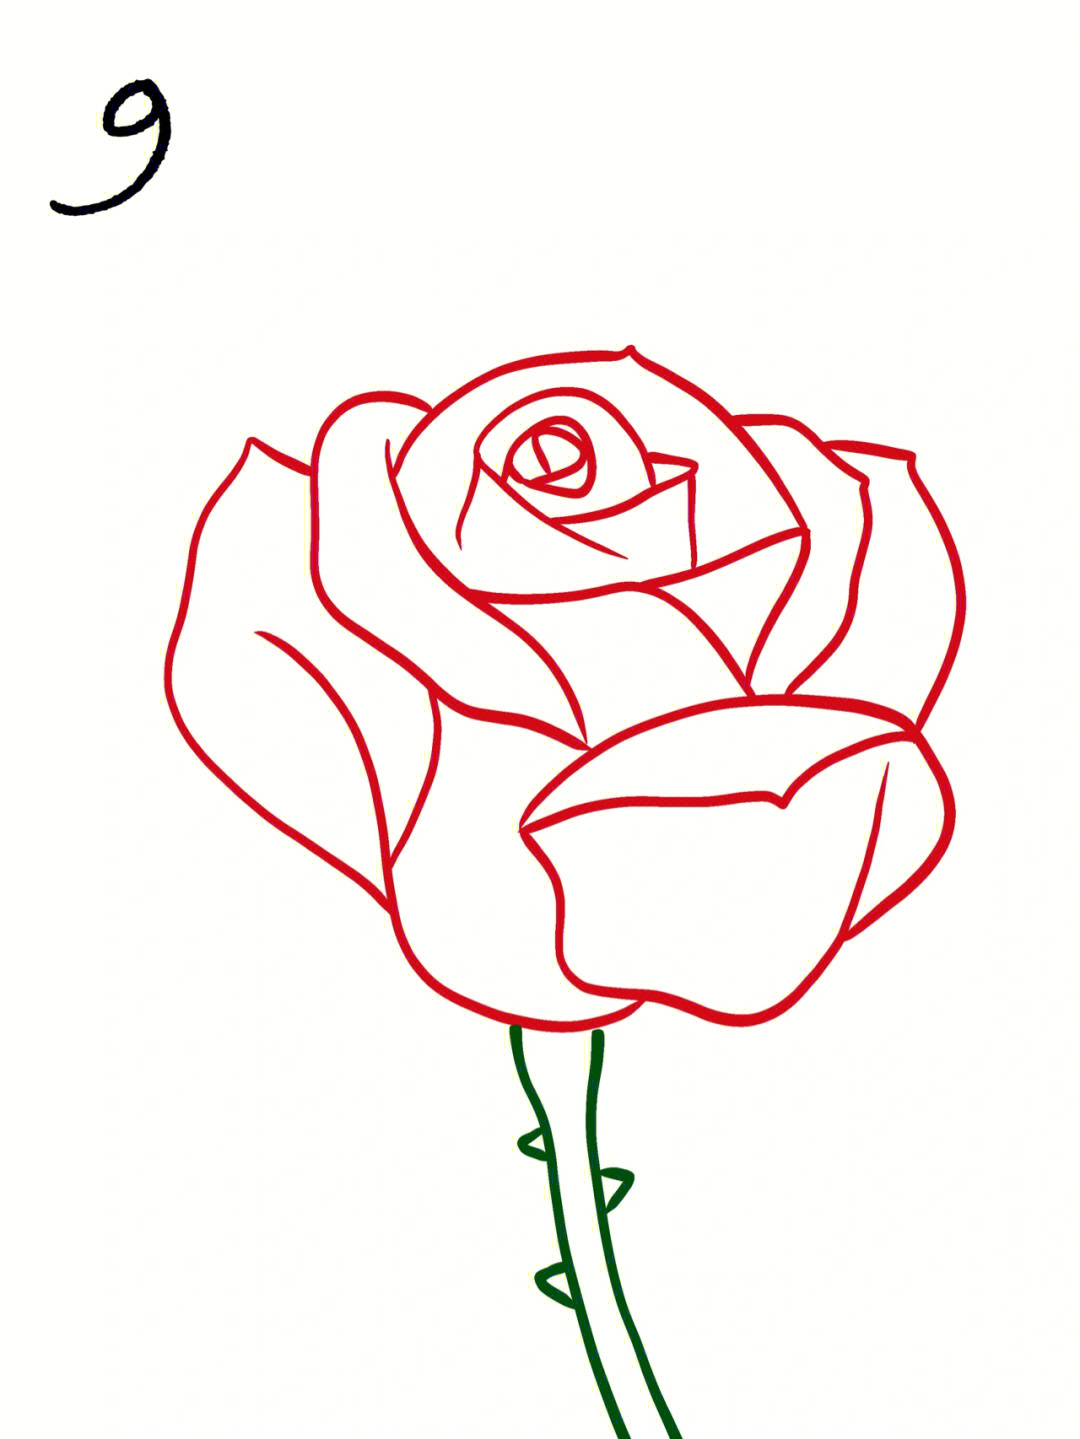 简笔玫瑰画法图片